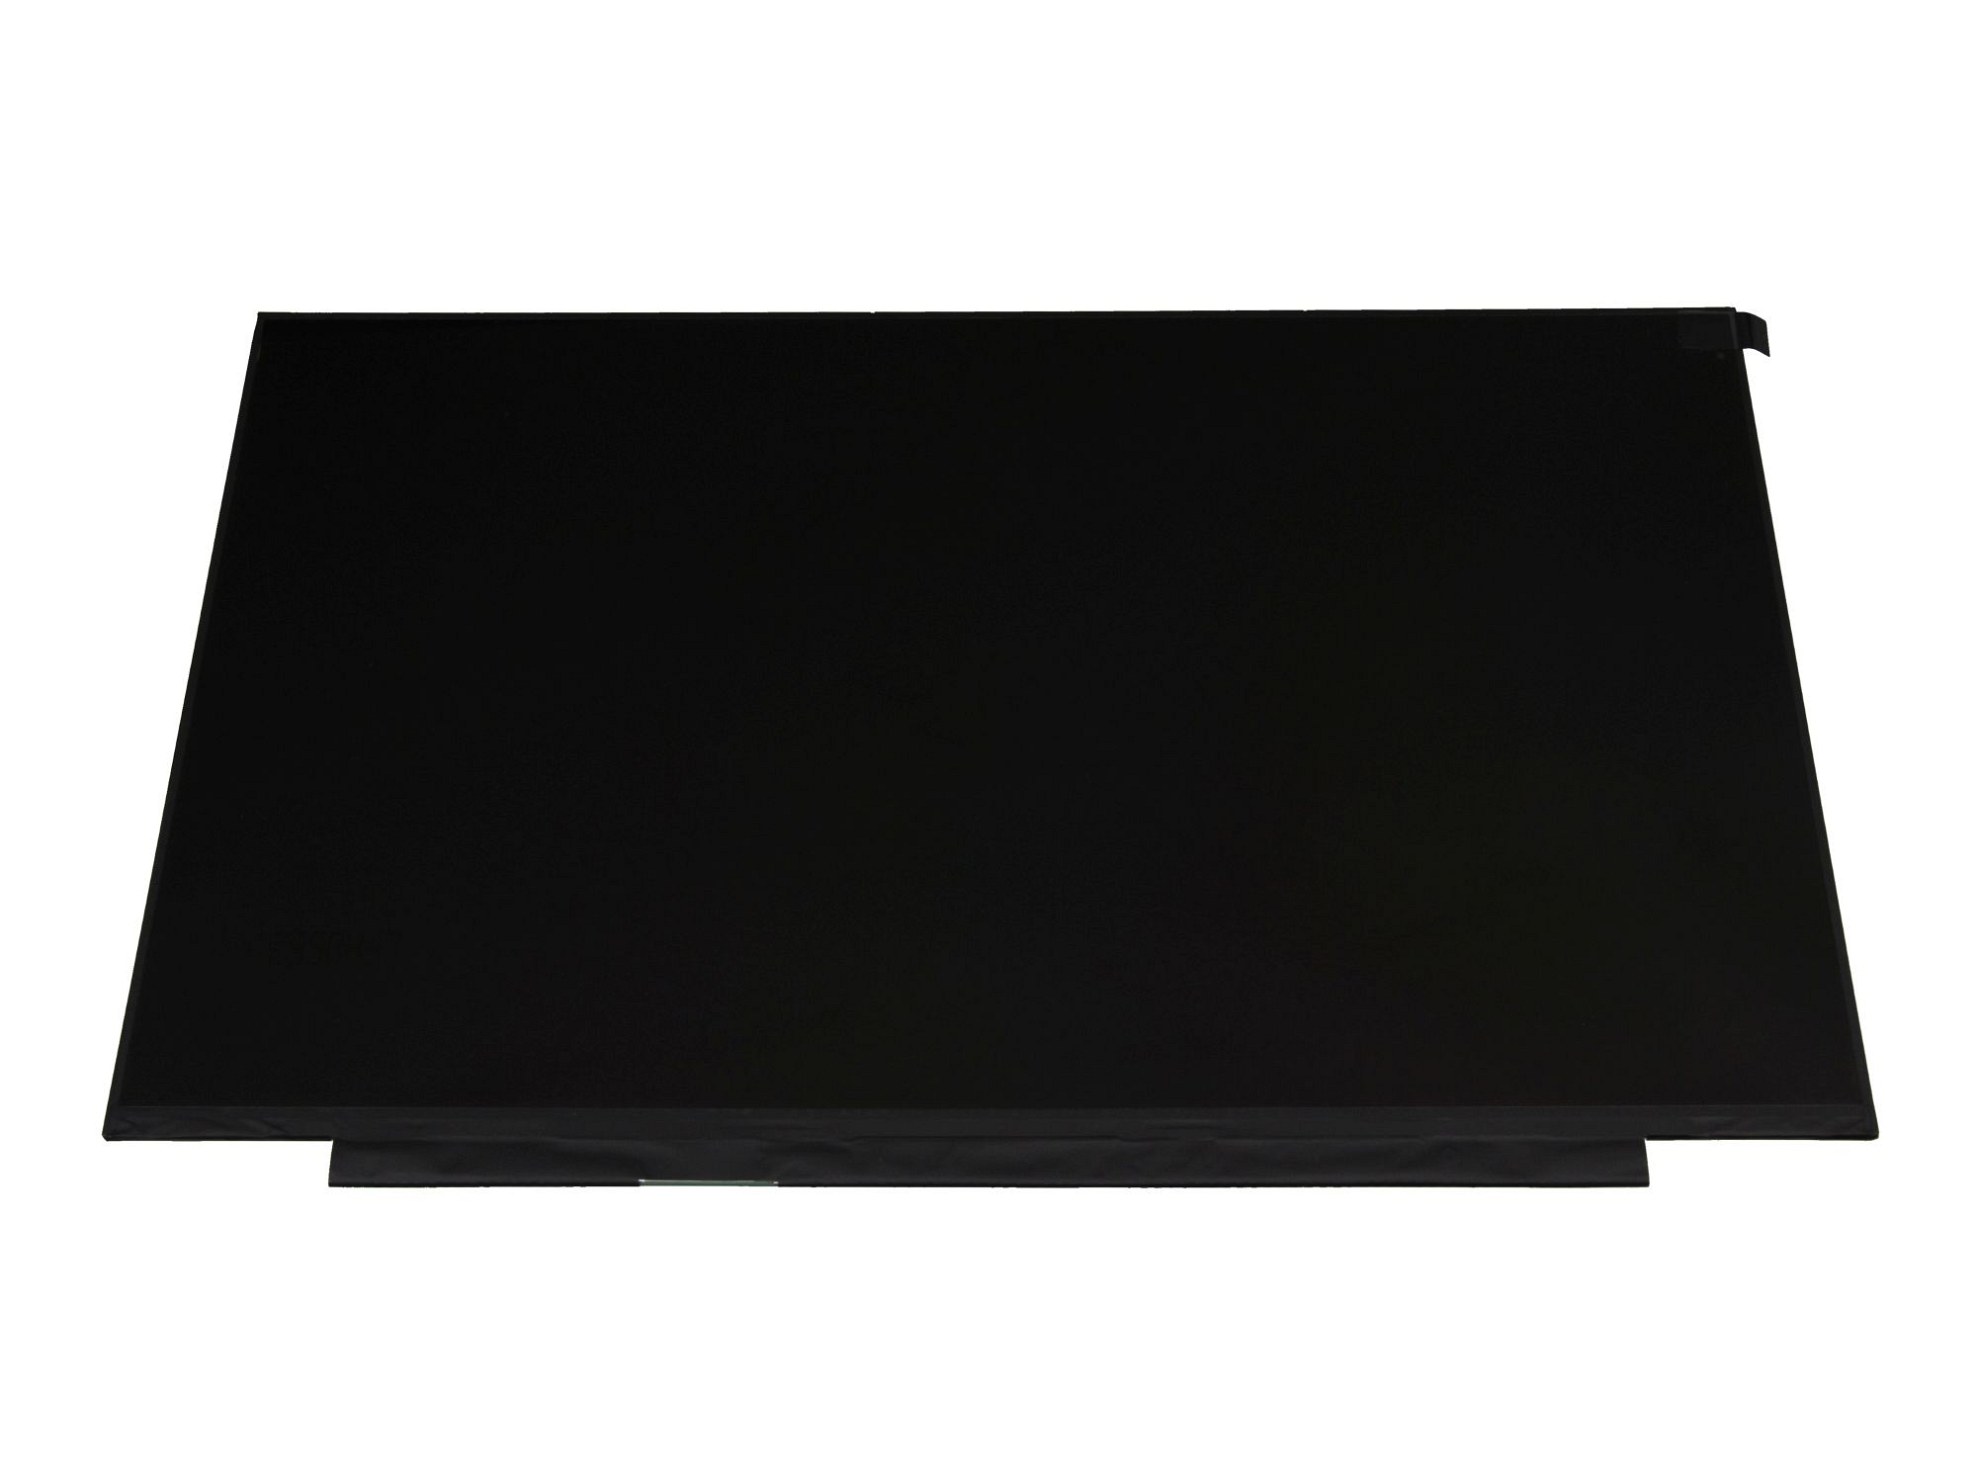 LG 6091L-3877A 144Hz IPS Display (1920x1080) matt slimline